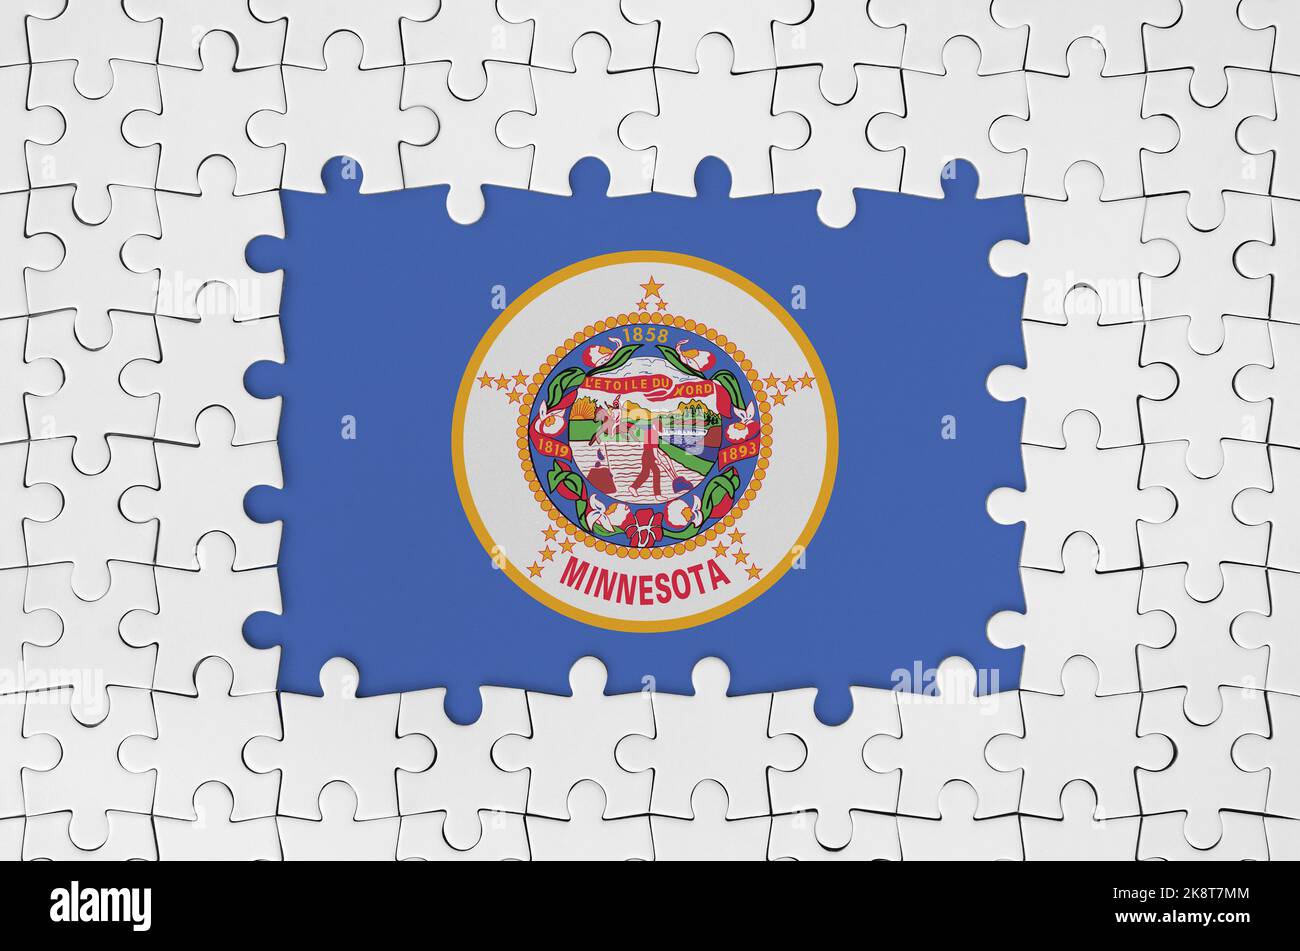 Drapeau d'état américain du Minnesota dans le cadre de pièces de puzzle blanches avec des pièces centrales manquantes Banque D'Images